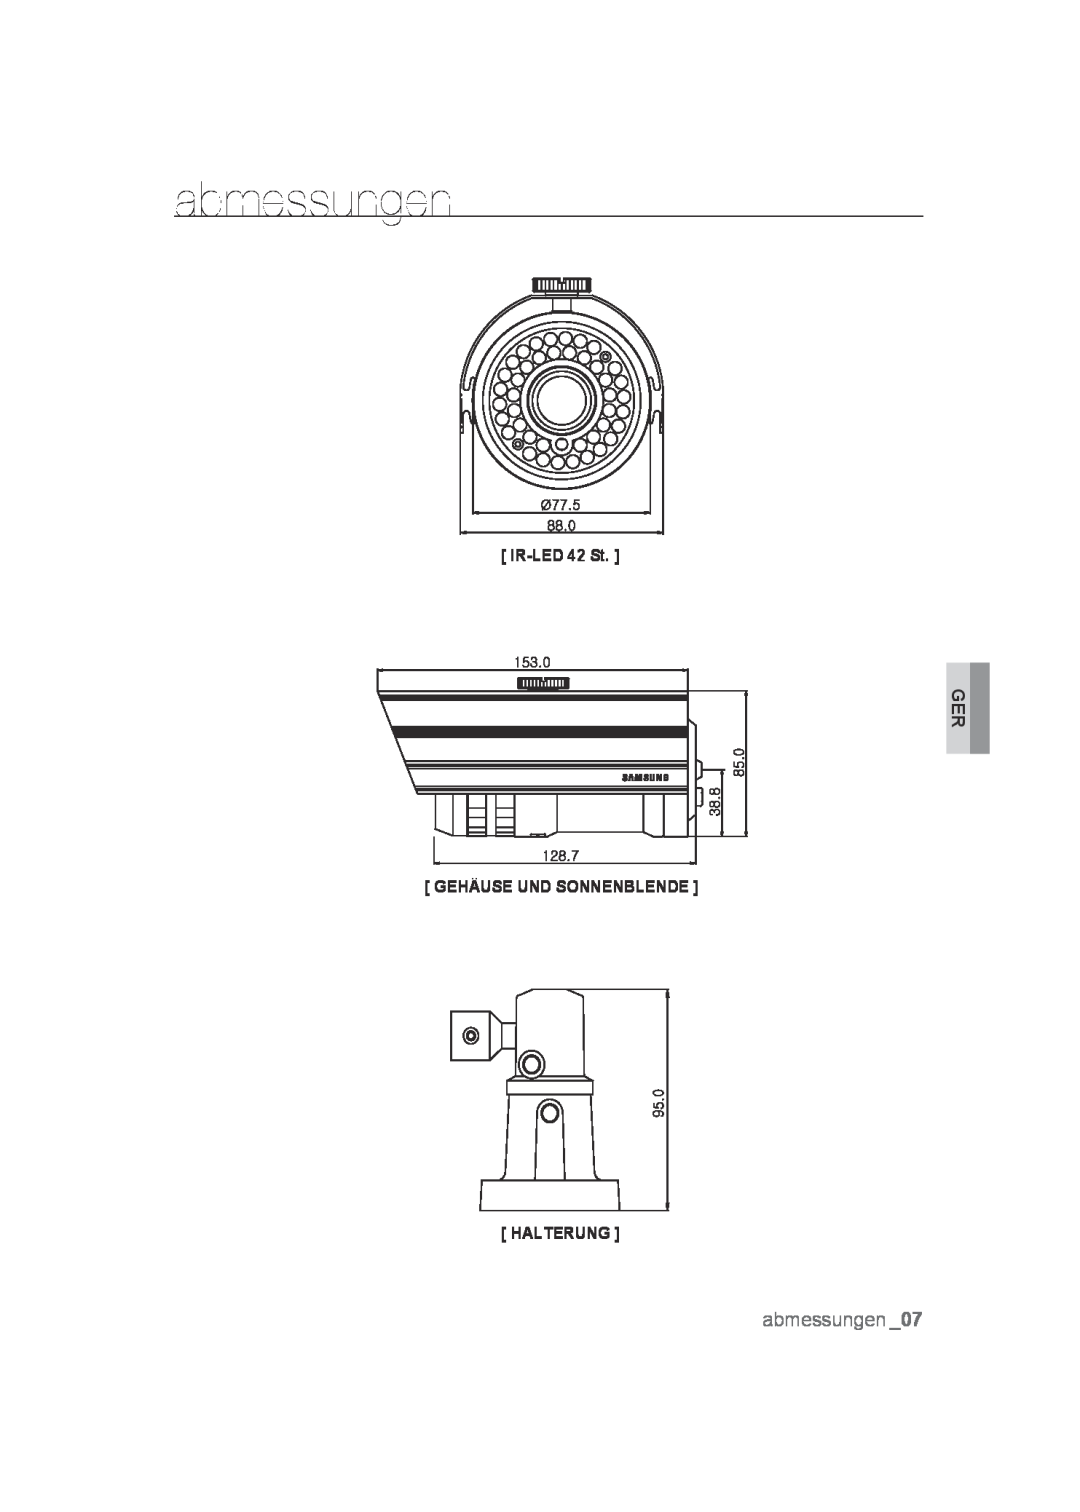 Samsung SCC-B9372P manual abmessungen, IR-LED 42 St, Gehäuse Und Sonnenblende Halterung 